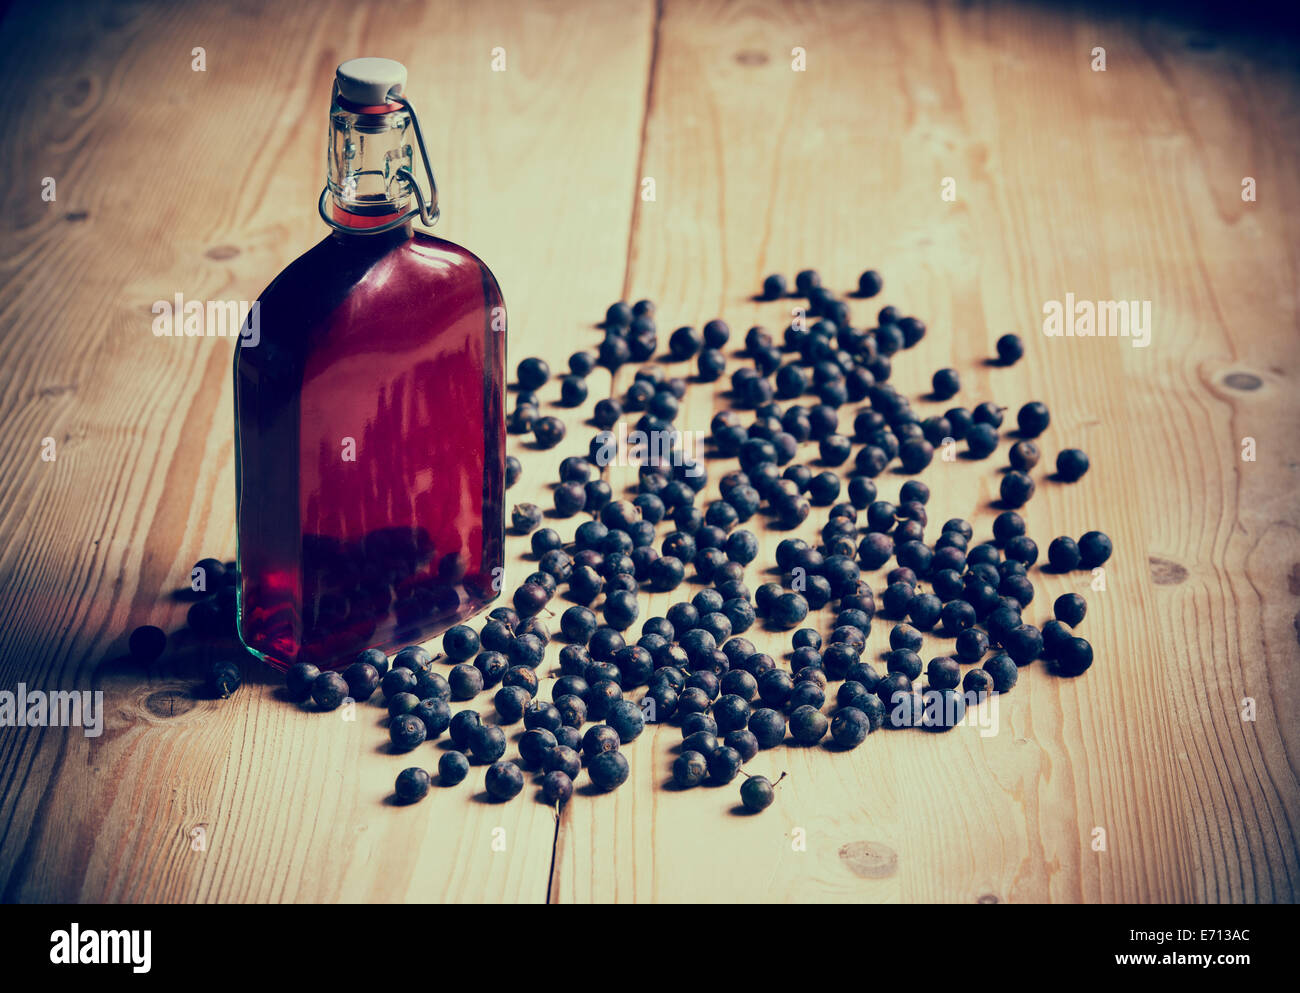 Prunus Spinosa. Blackthorn / Schlehe Beeren und eine Flasche Schlehe gin auf einem hölzernen Küchentisch. Retro-Vintage-Stil Stockfoto